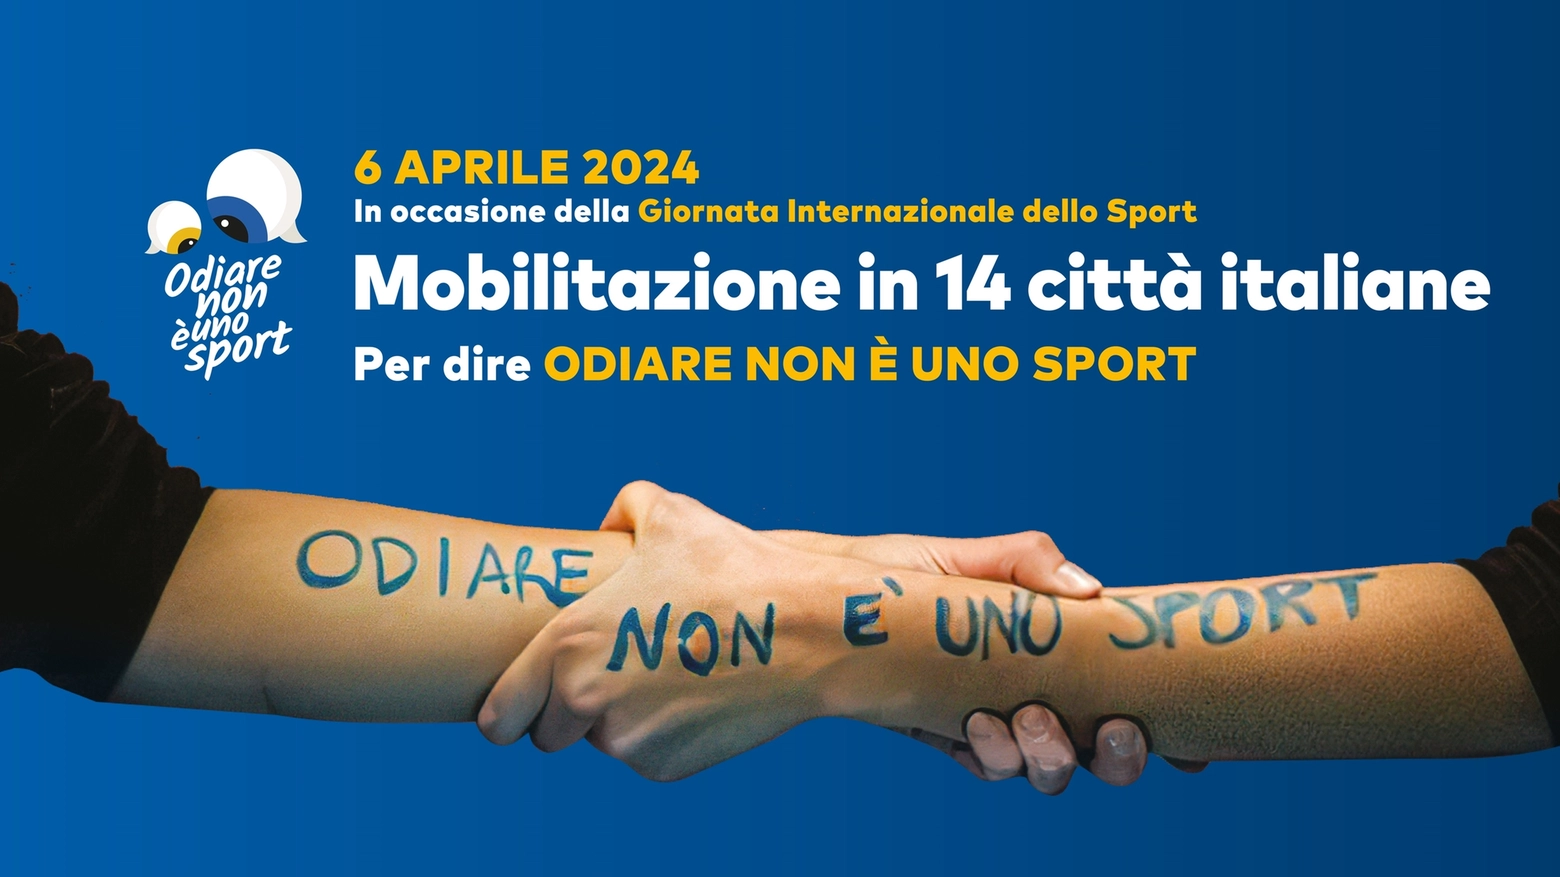 Odiare non è uno sport: con questo slogan il 6 aprile si terrà un flash mob in tutta Italia